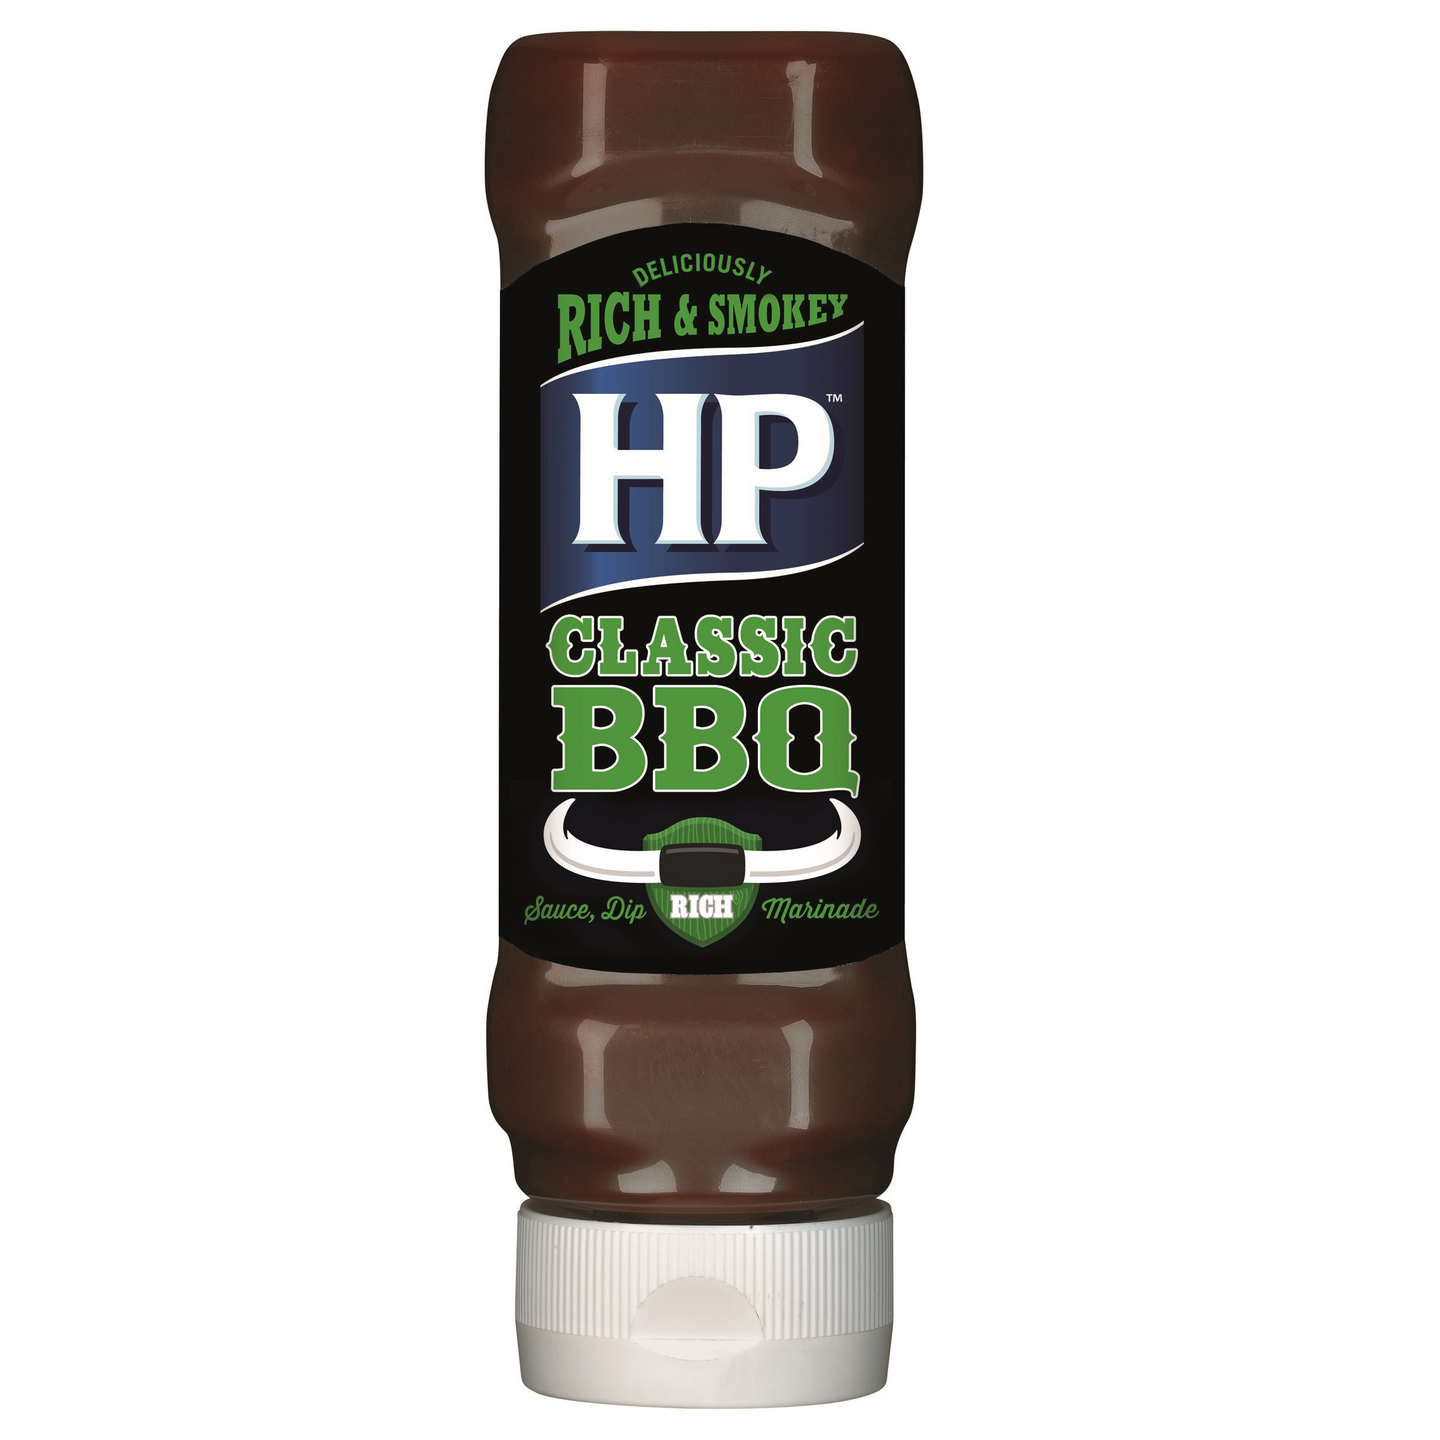 HP Classic BBQ-kastike 465g